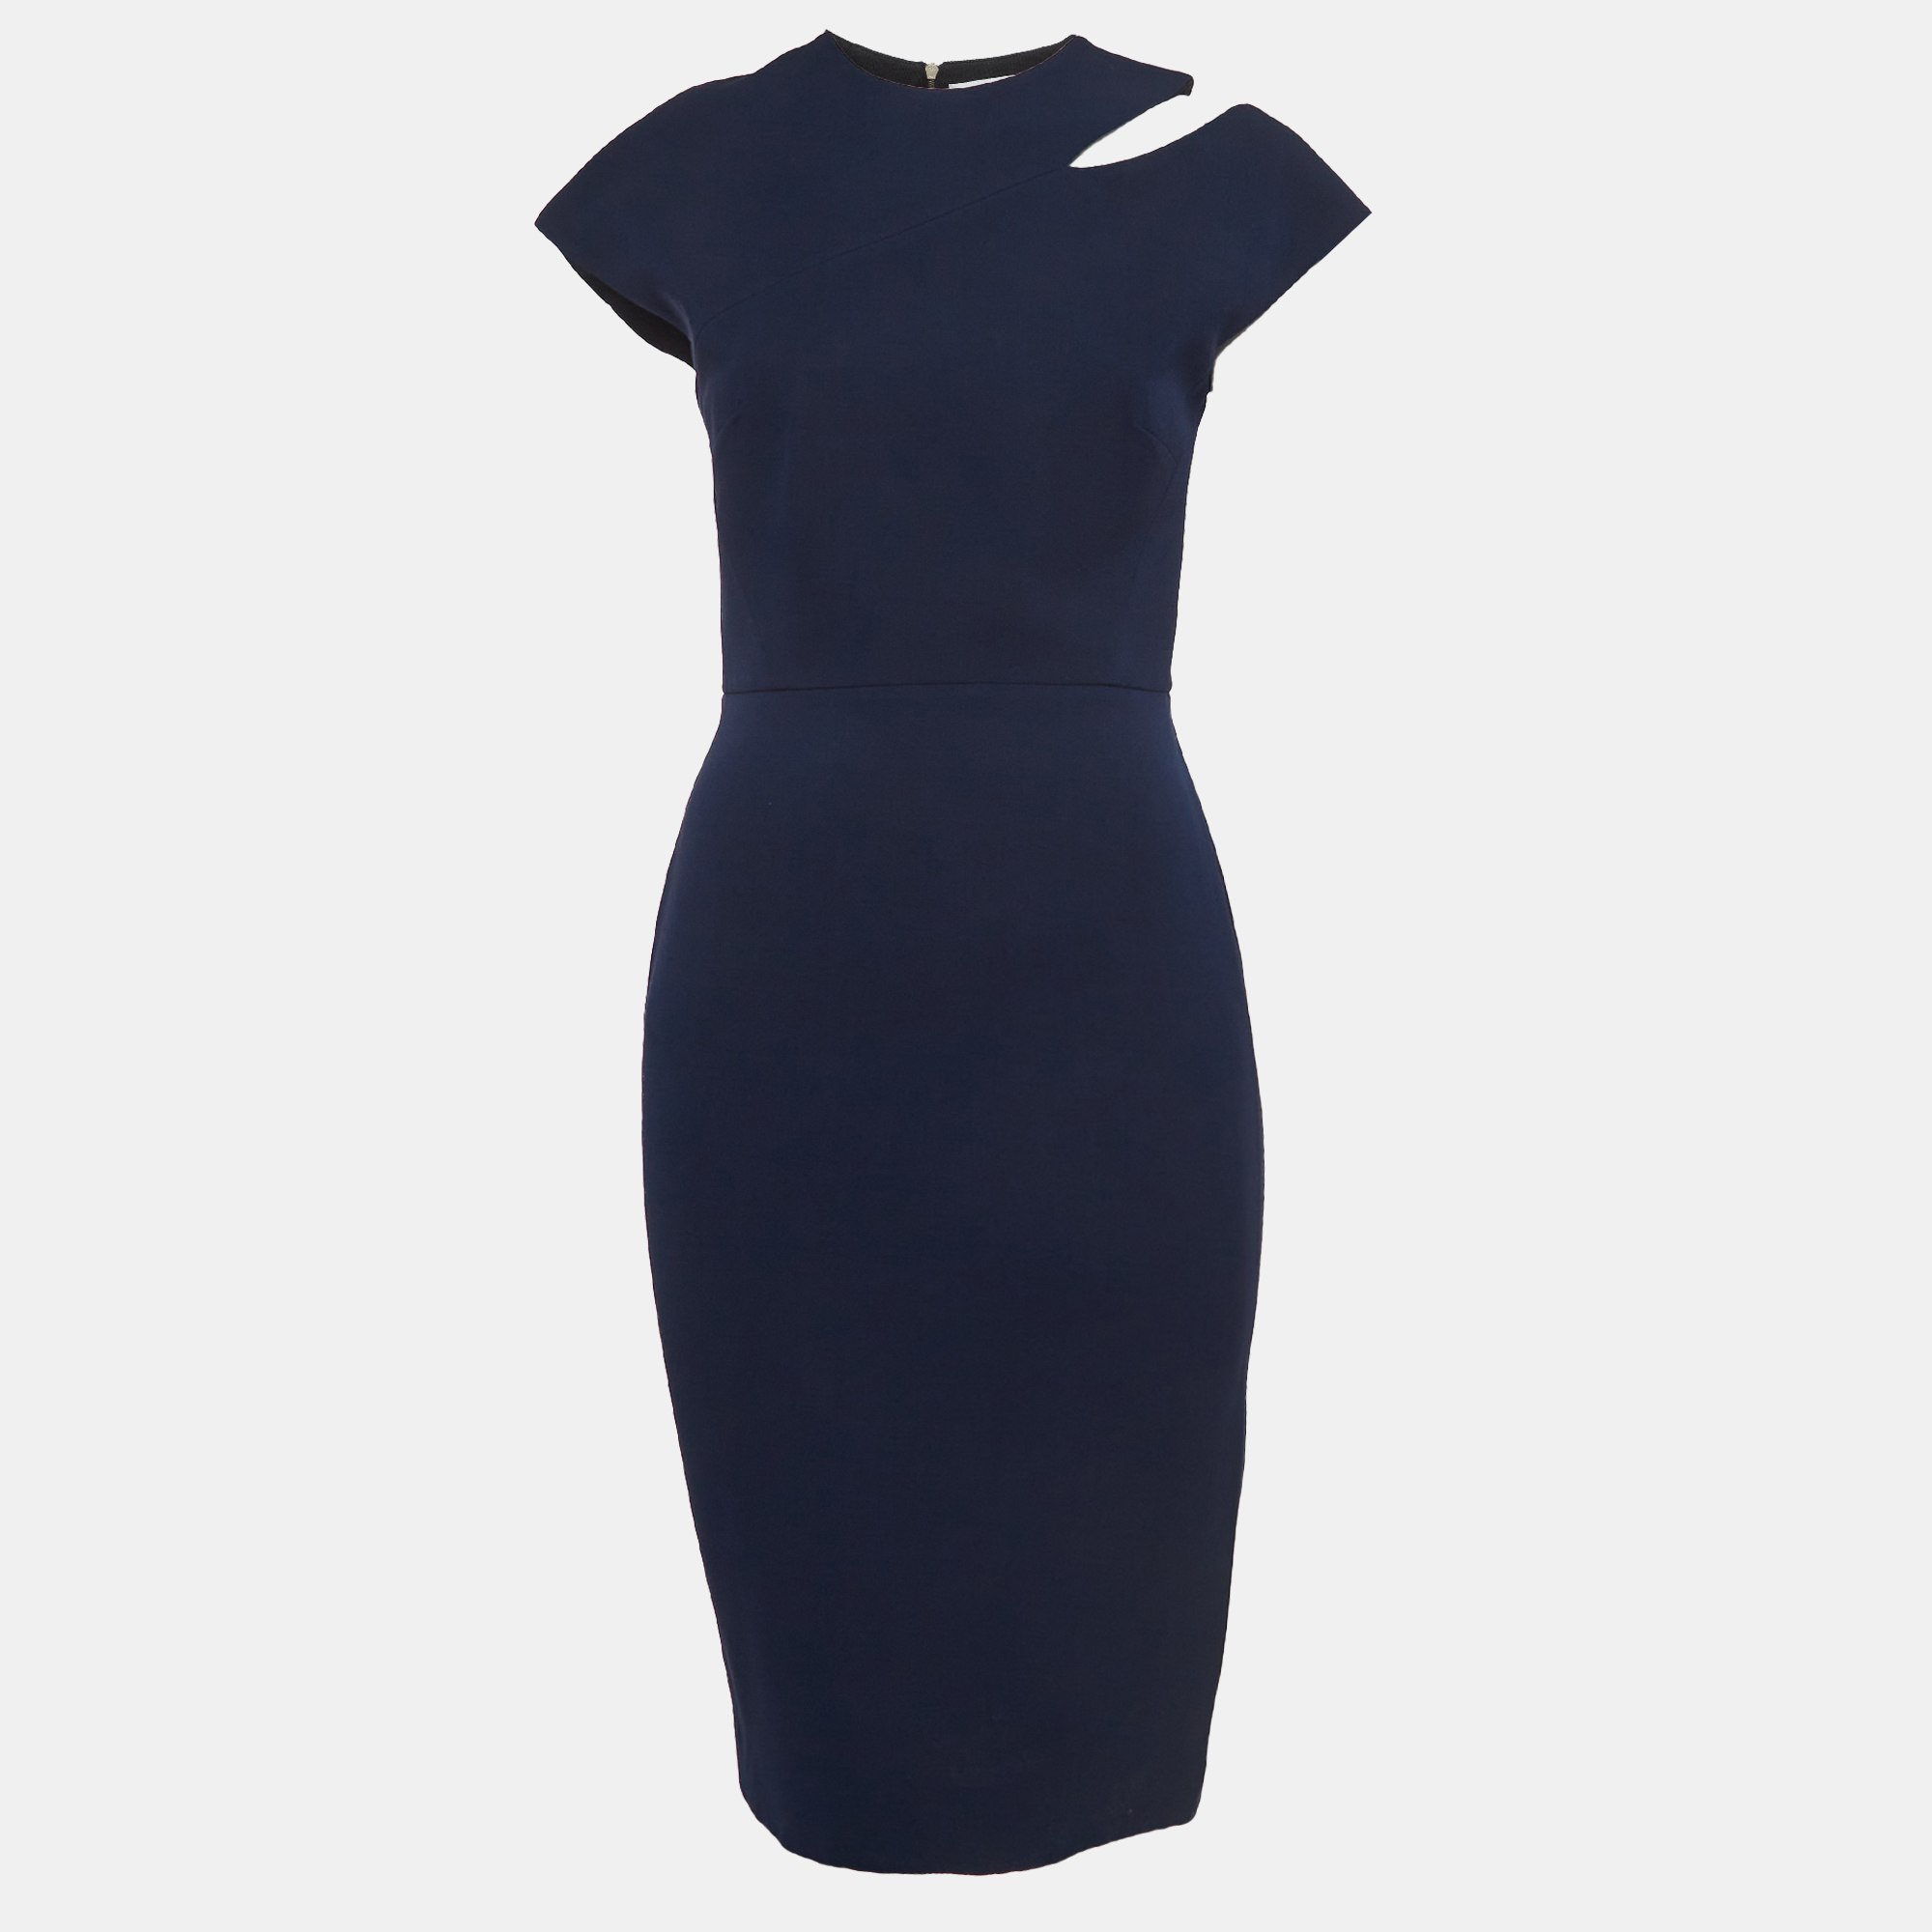 Victoria Beckham Navy Blue Silk Blend Cut Out Detail Sheath Dress M